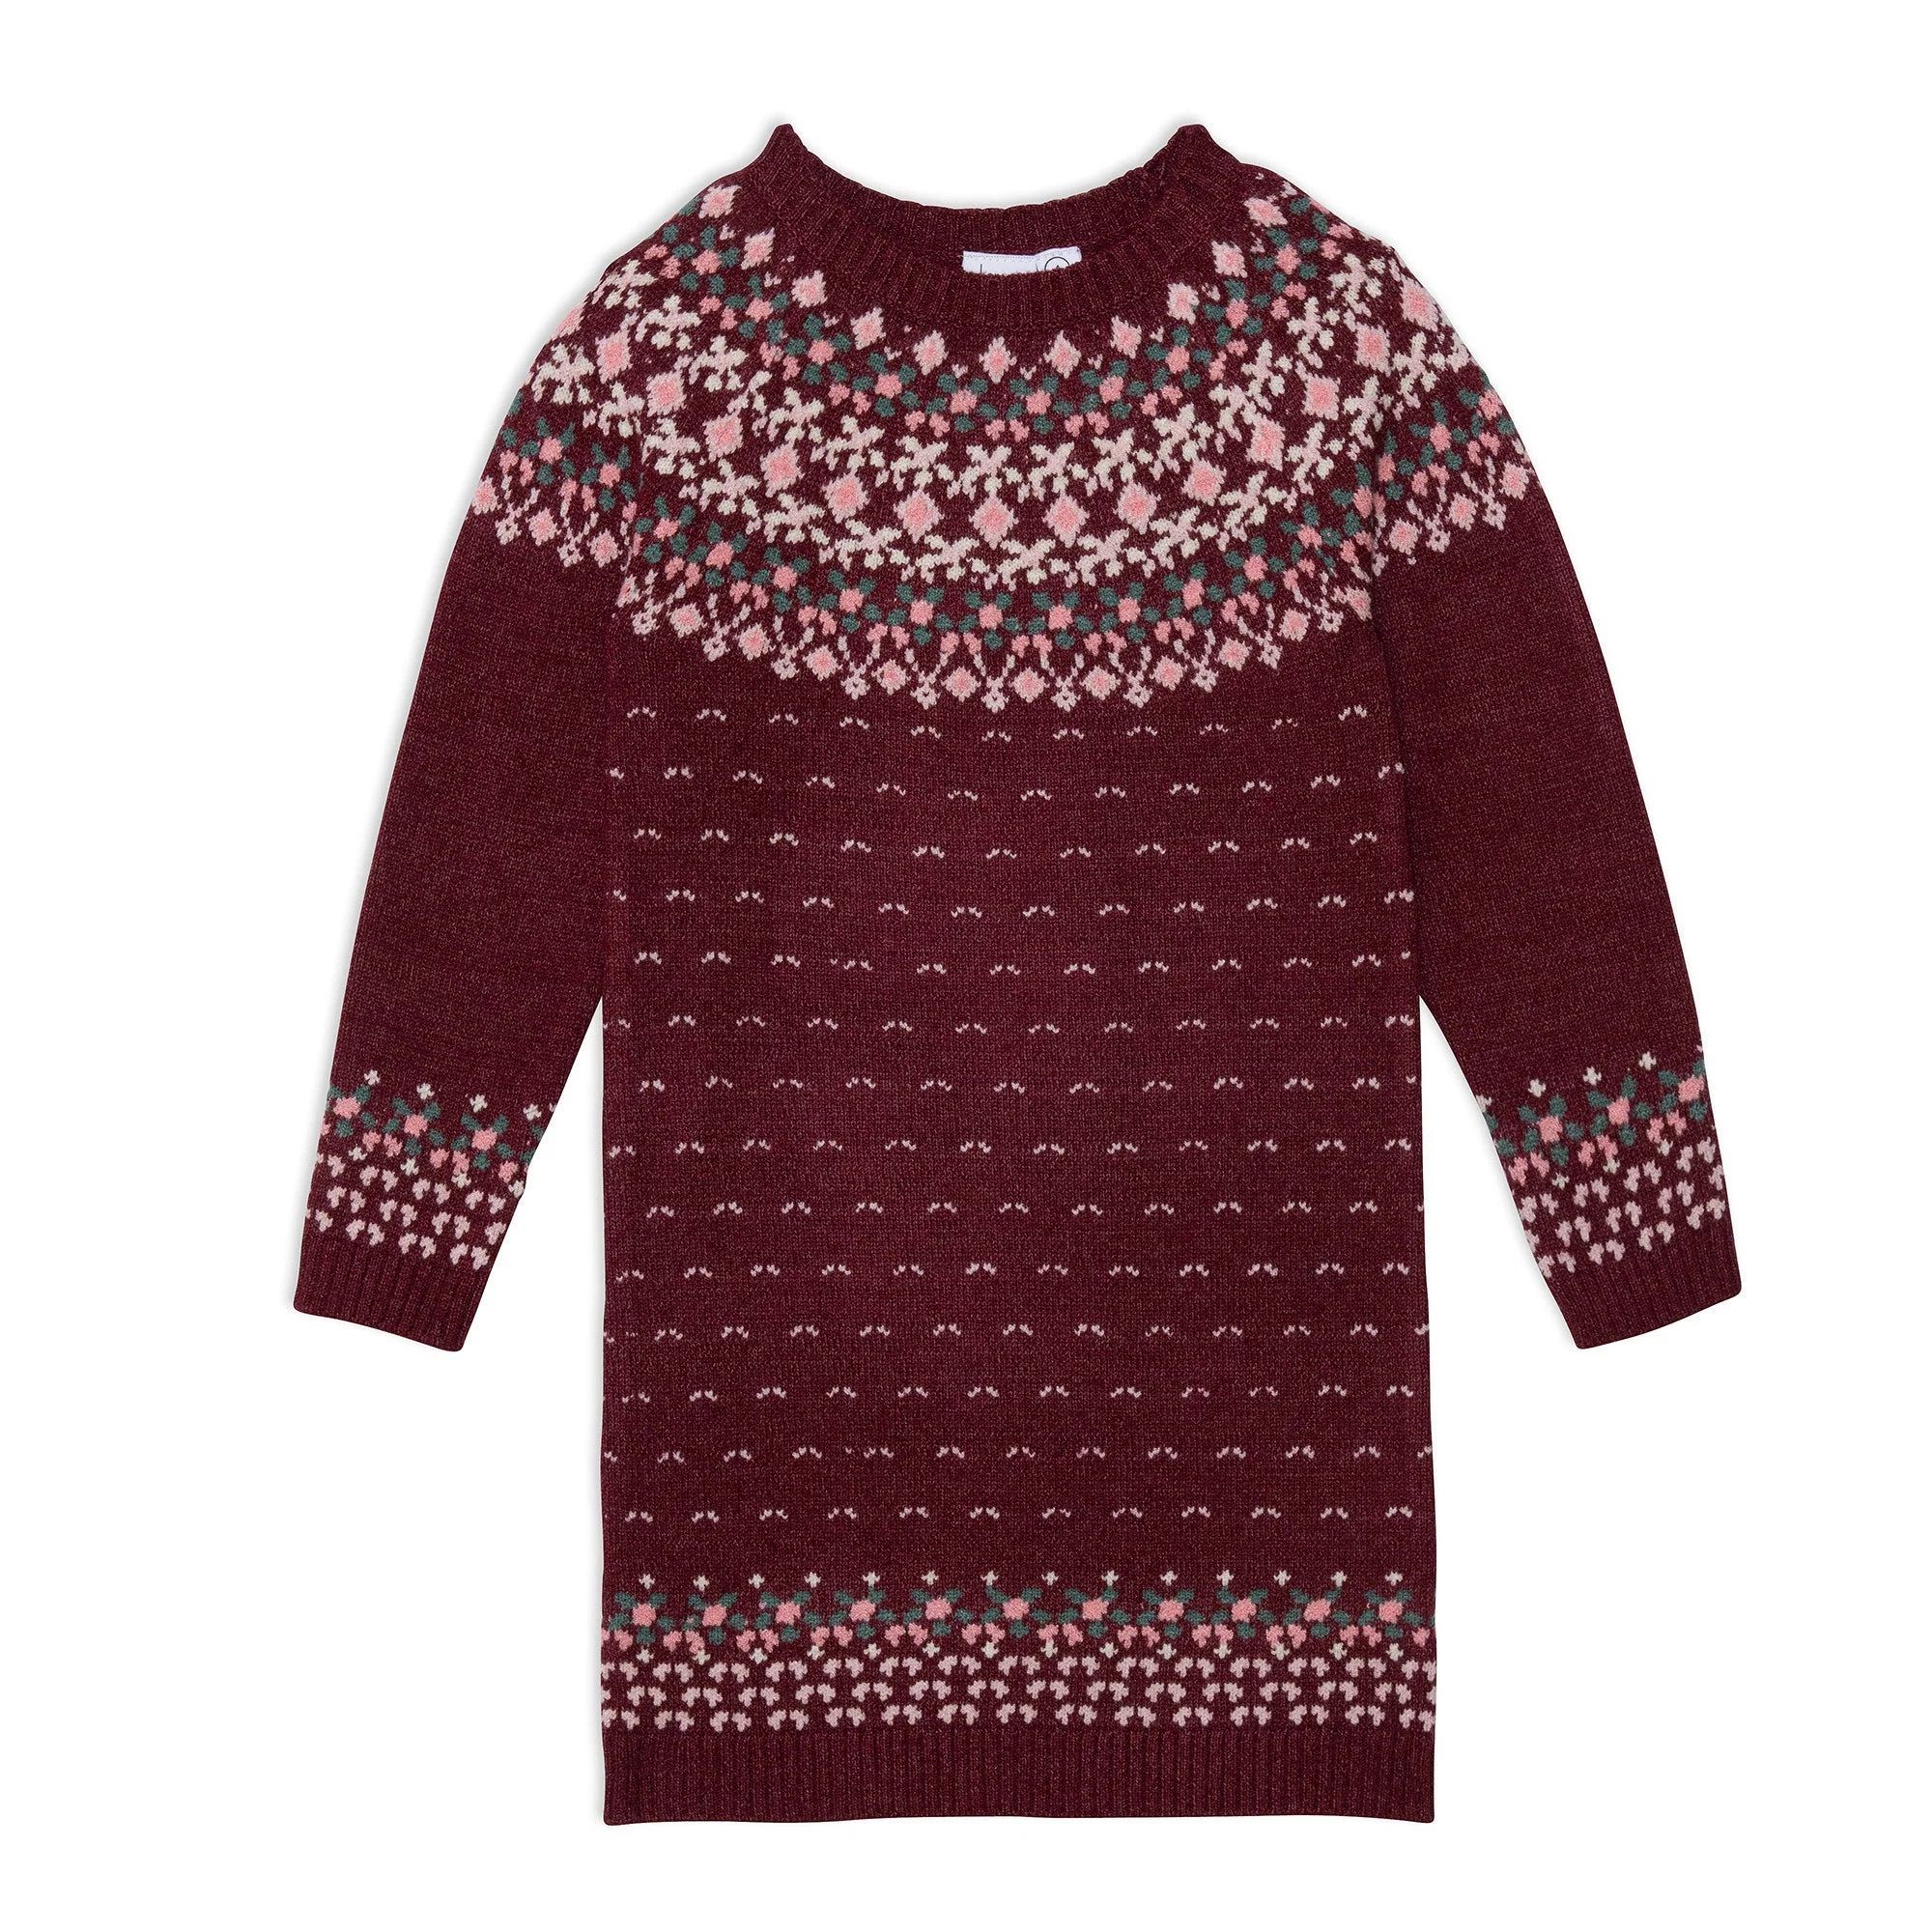 Knitted Long Sleeve Dress Burgundy And Pink | Deux par Deux Childrens Designer Clothing